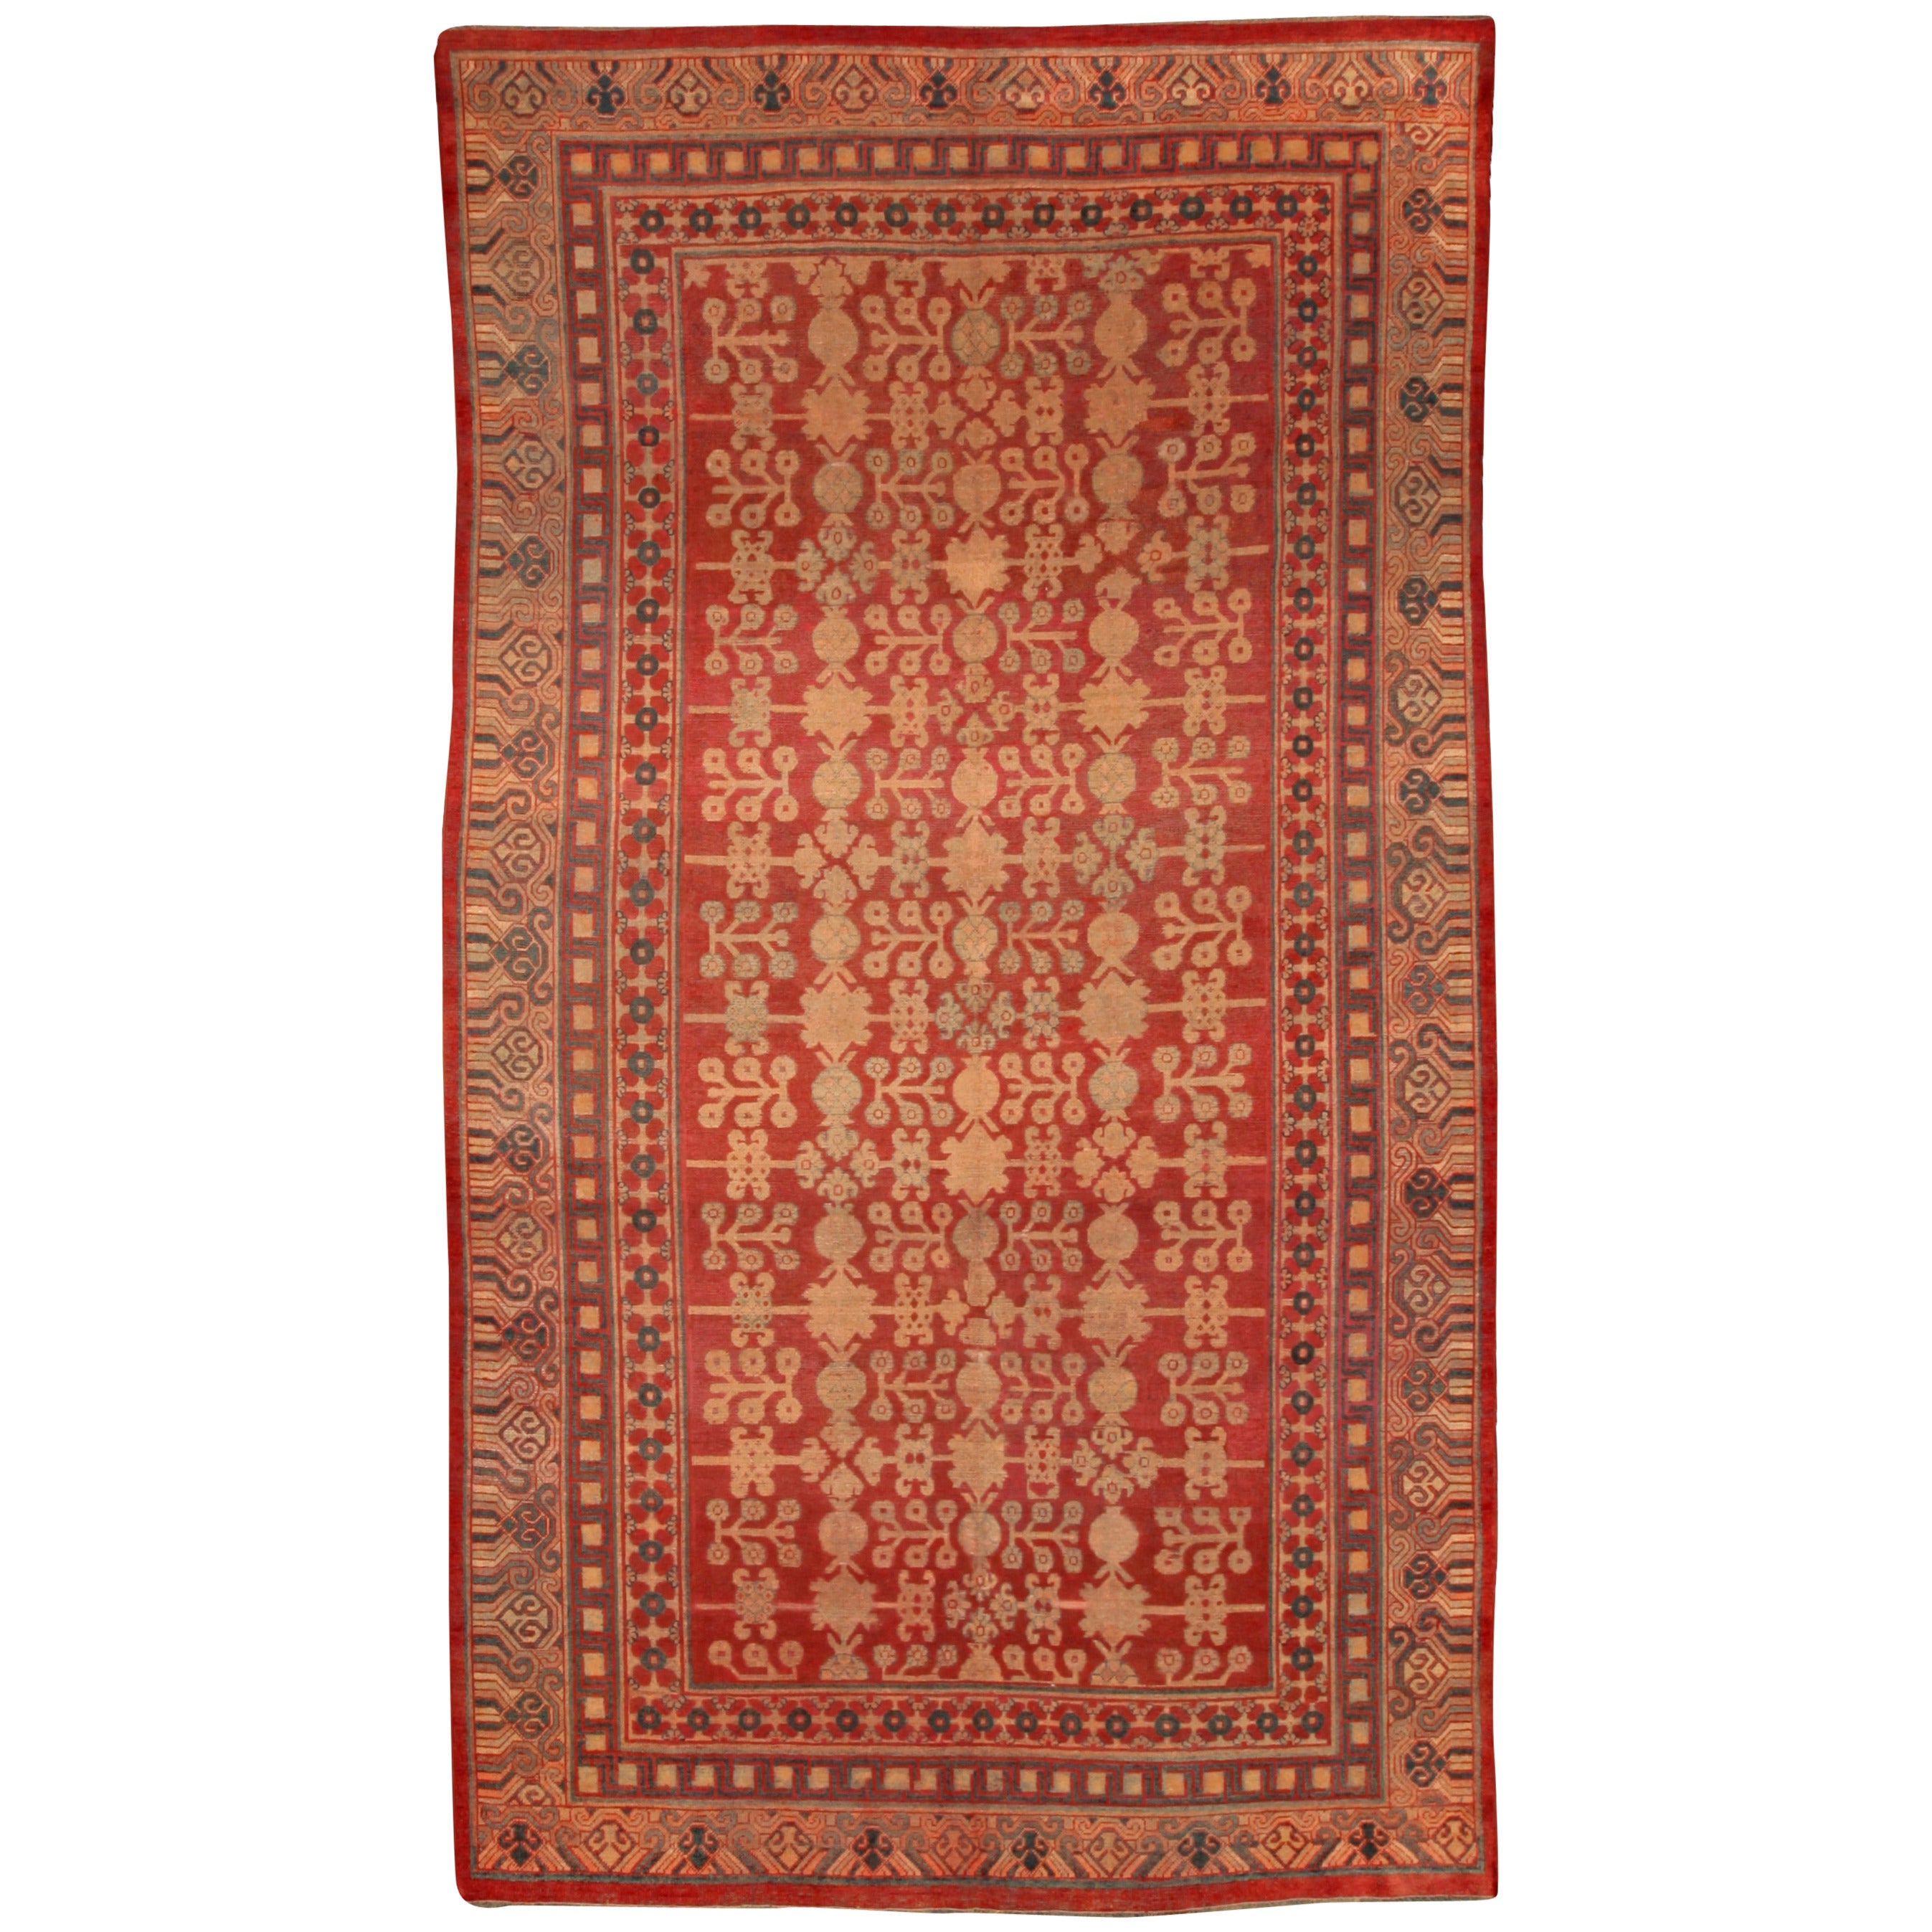 Tapis Samarkand Khotan en soie rouge du 19ème siècle